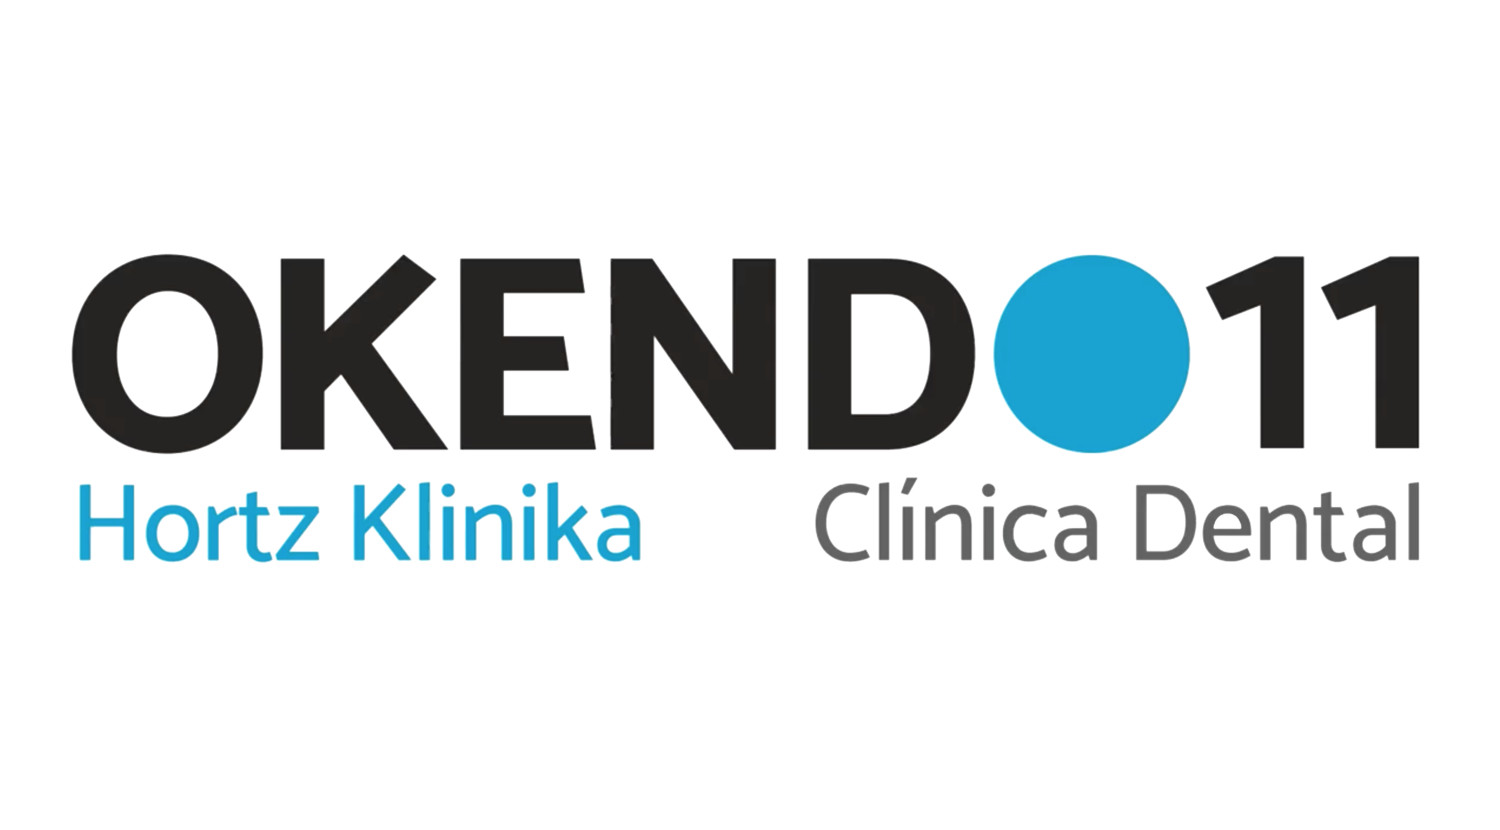 Clínica Dental Okendo11 